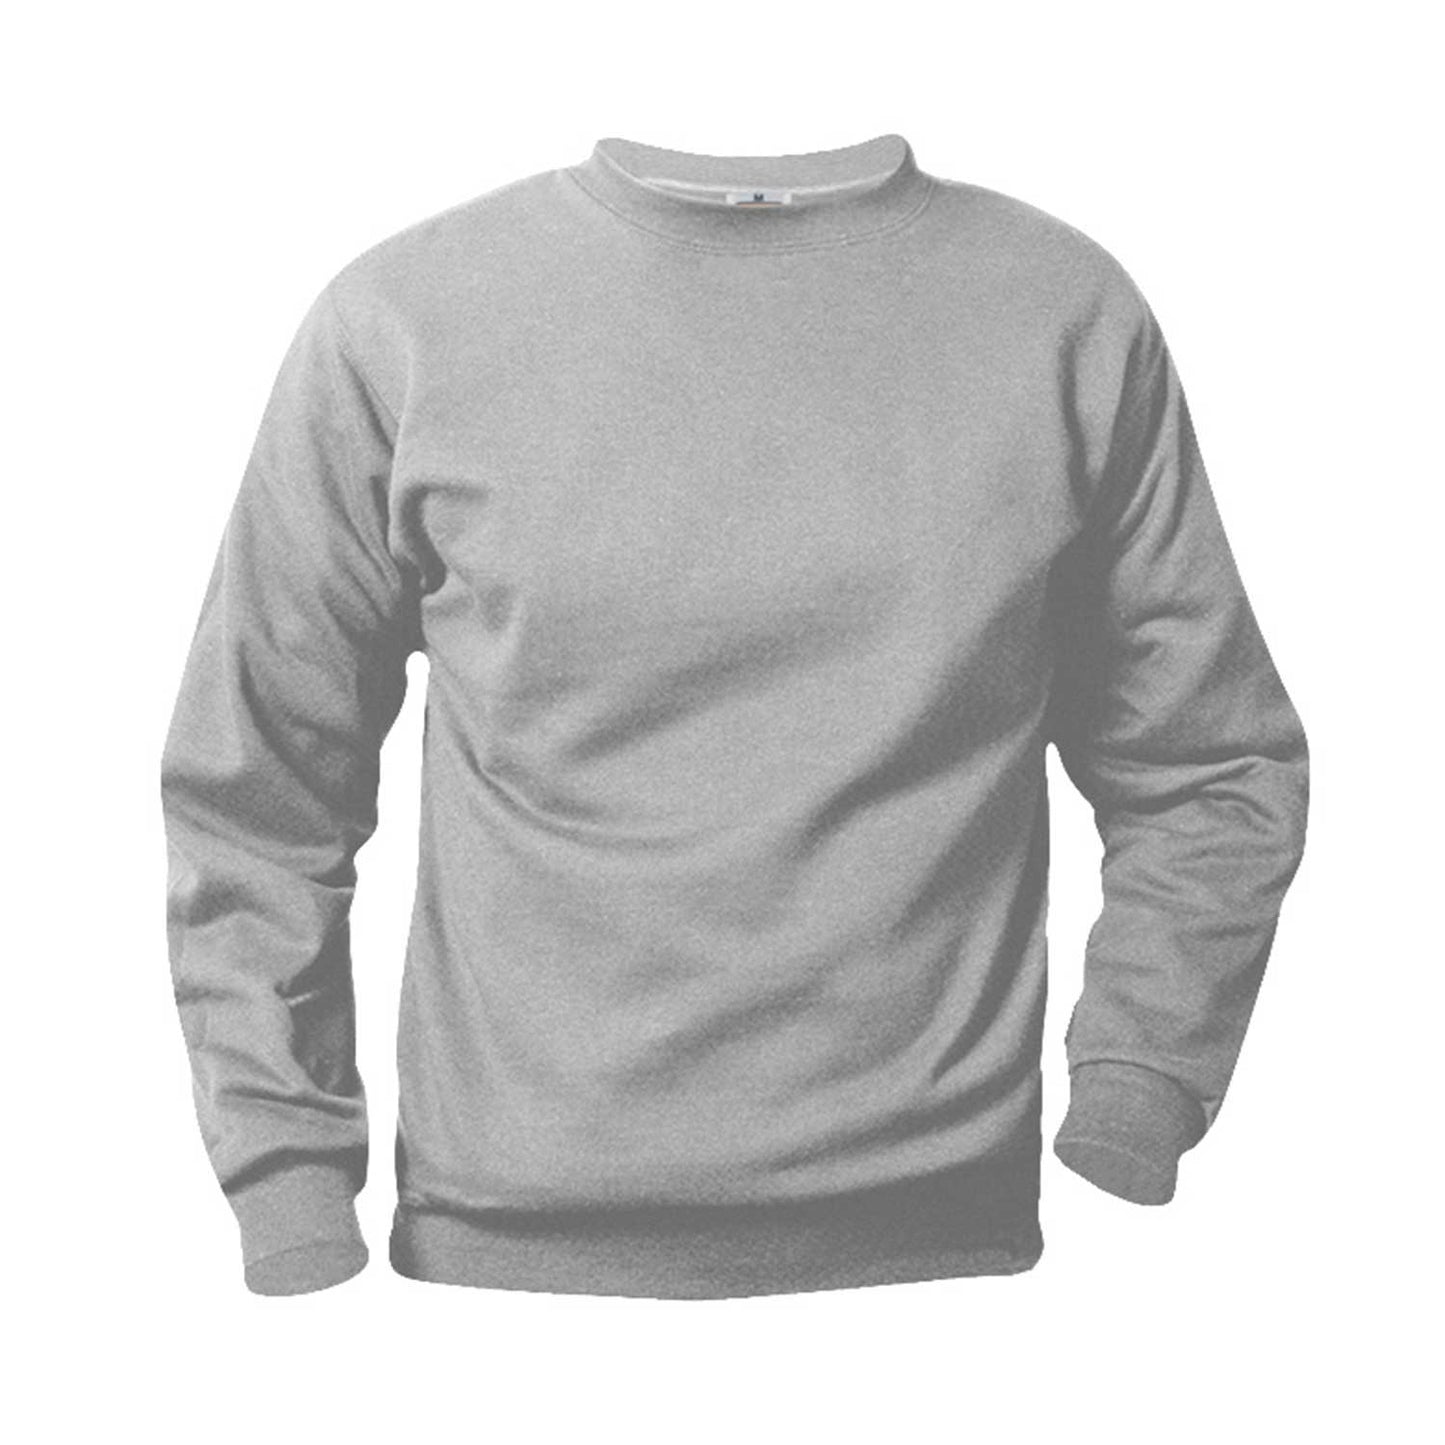 Unisex Crewneck Fleece Sweatshirt w/Logo - 1112